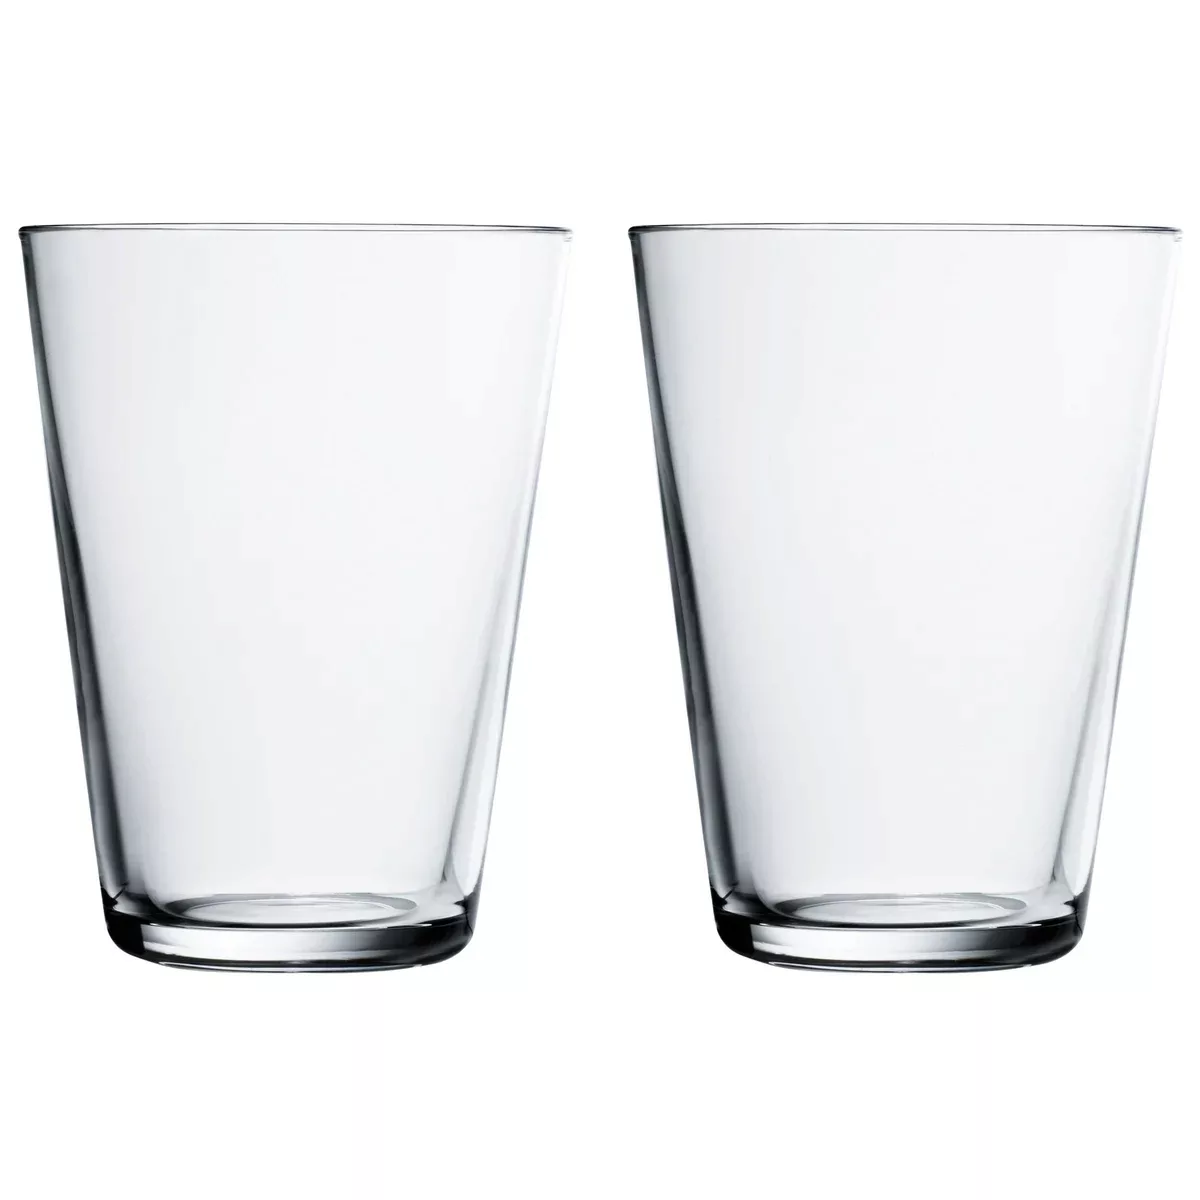 iittala - Kartio Longdrink Glas 2er Set 40cl - transparent/H 12cm/0,4L günstig online kaufen